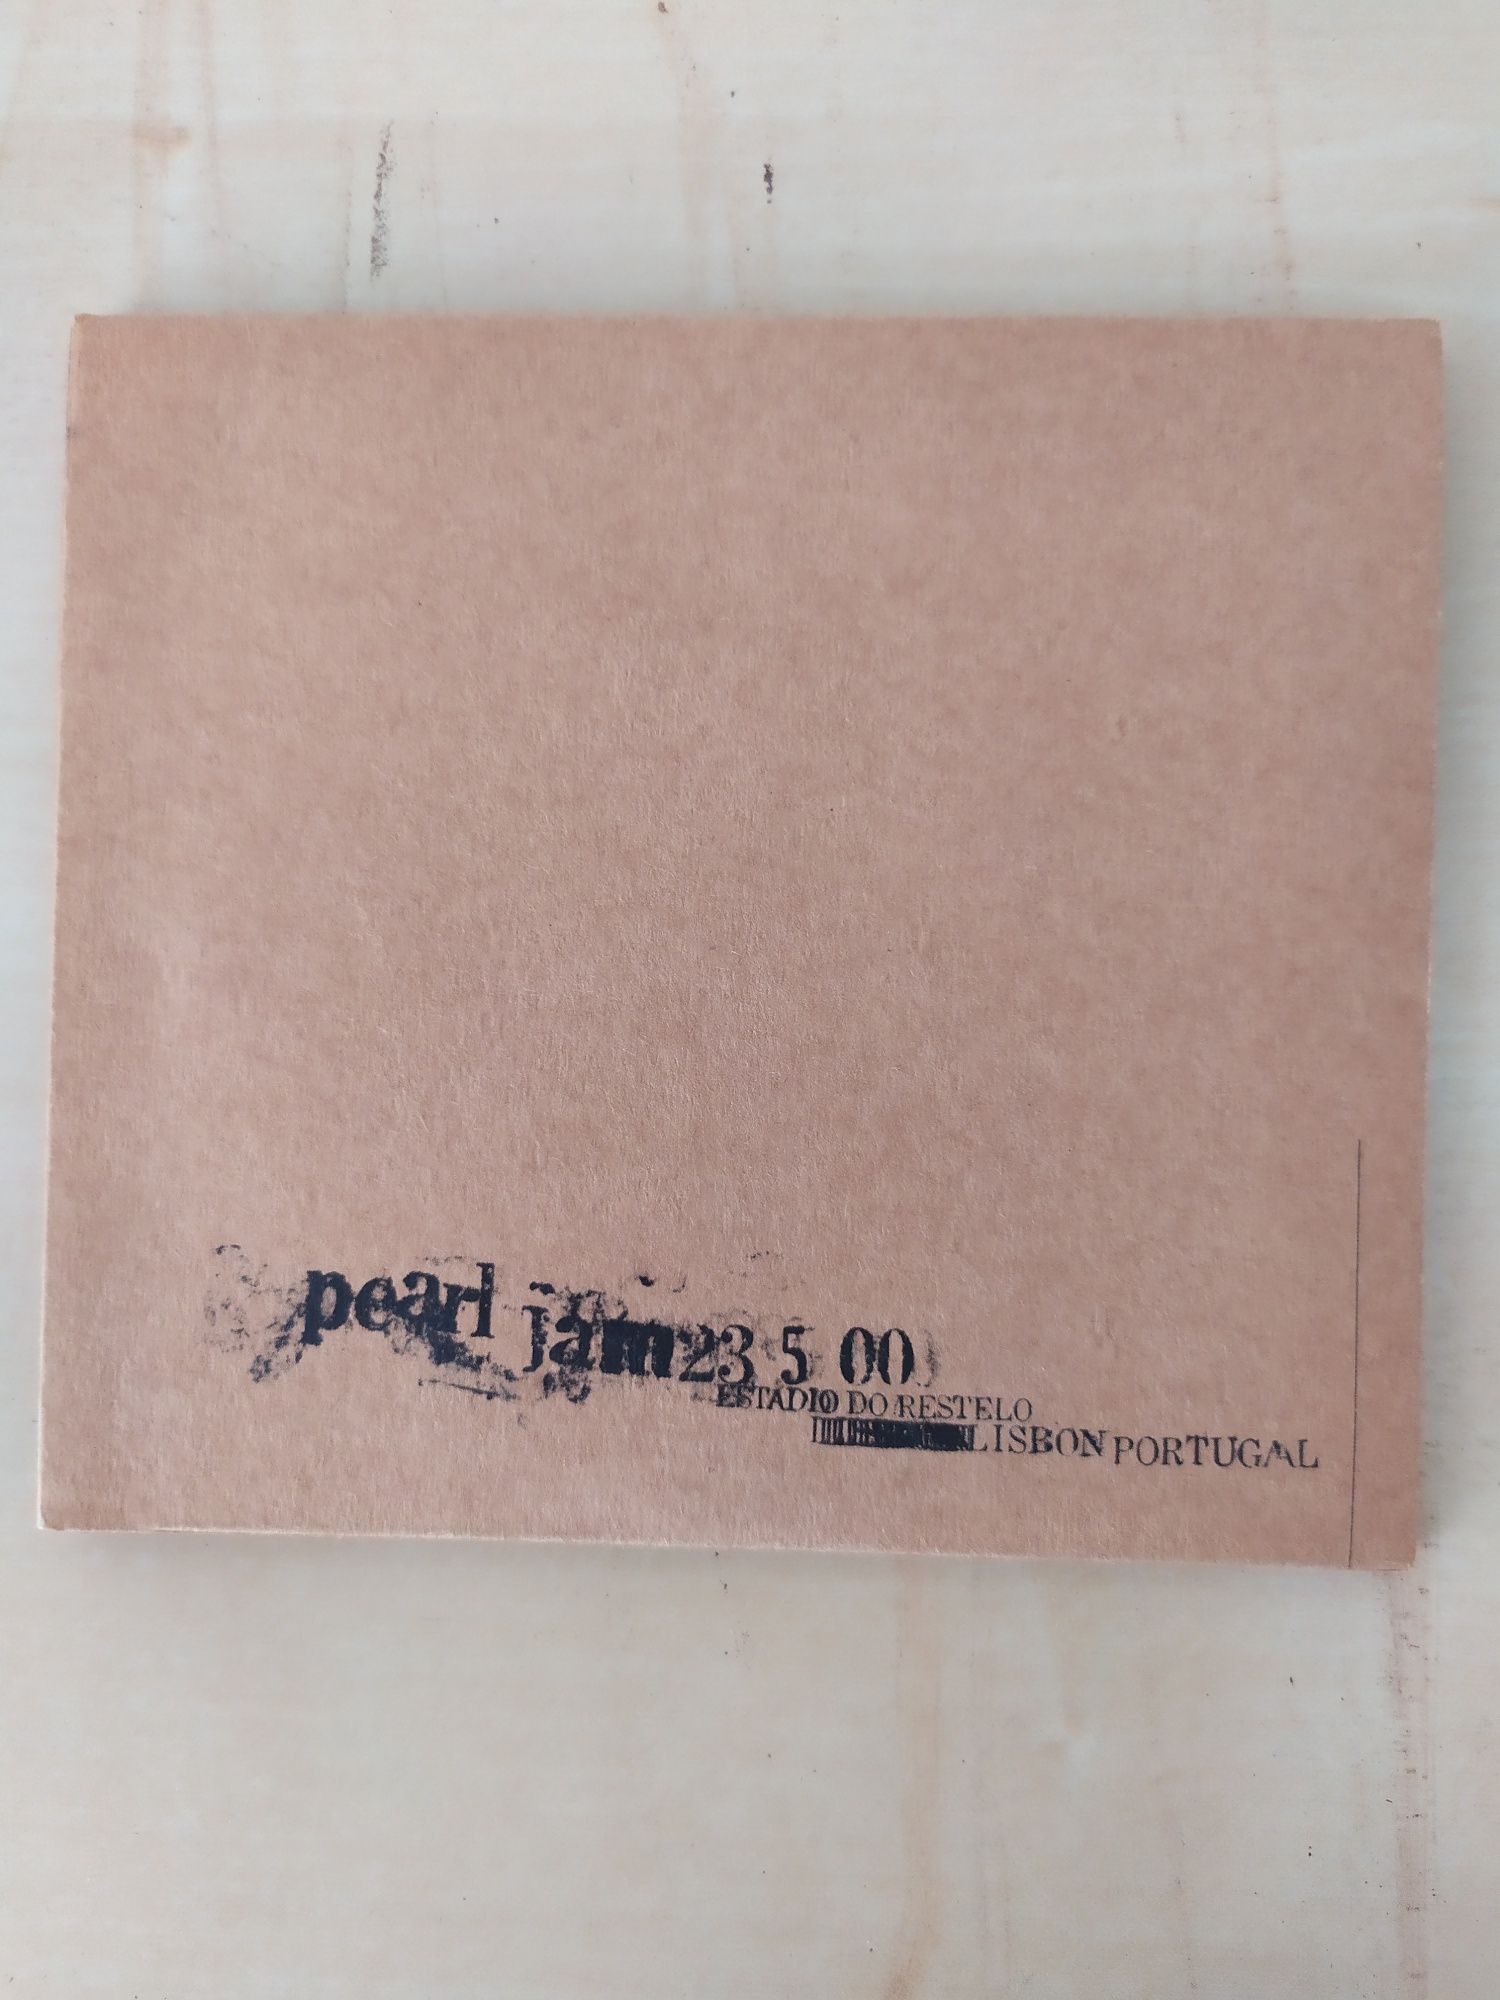 CD de música dos Pearl Jam